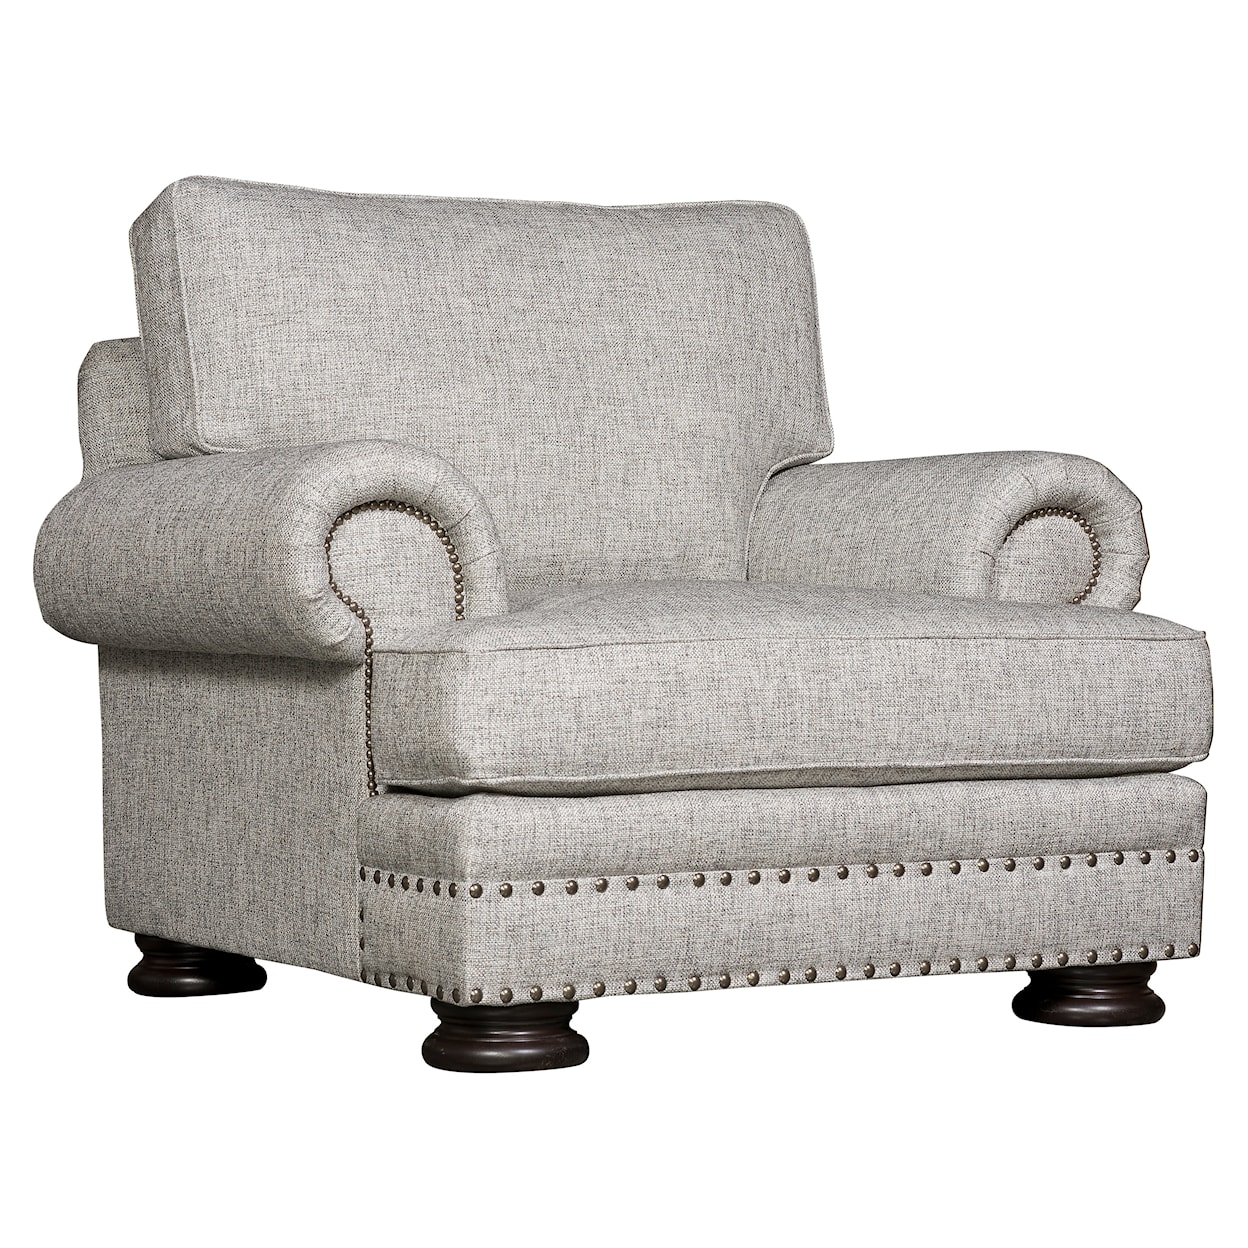 Bernhardt Bernhardt Living Foster Fabric Chair without Pillows